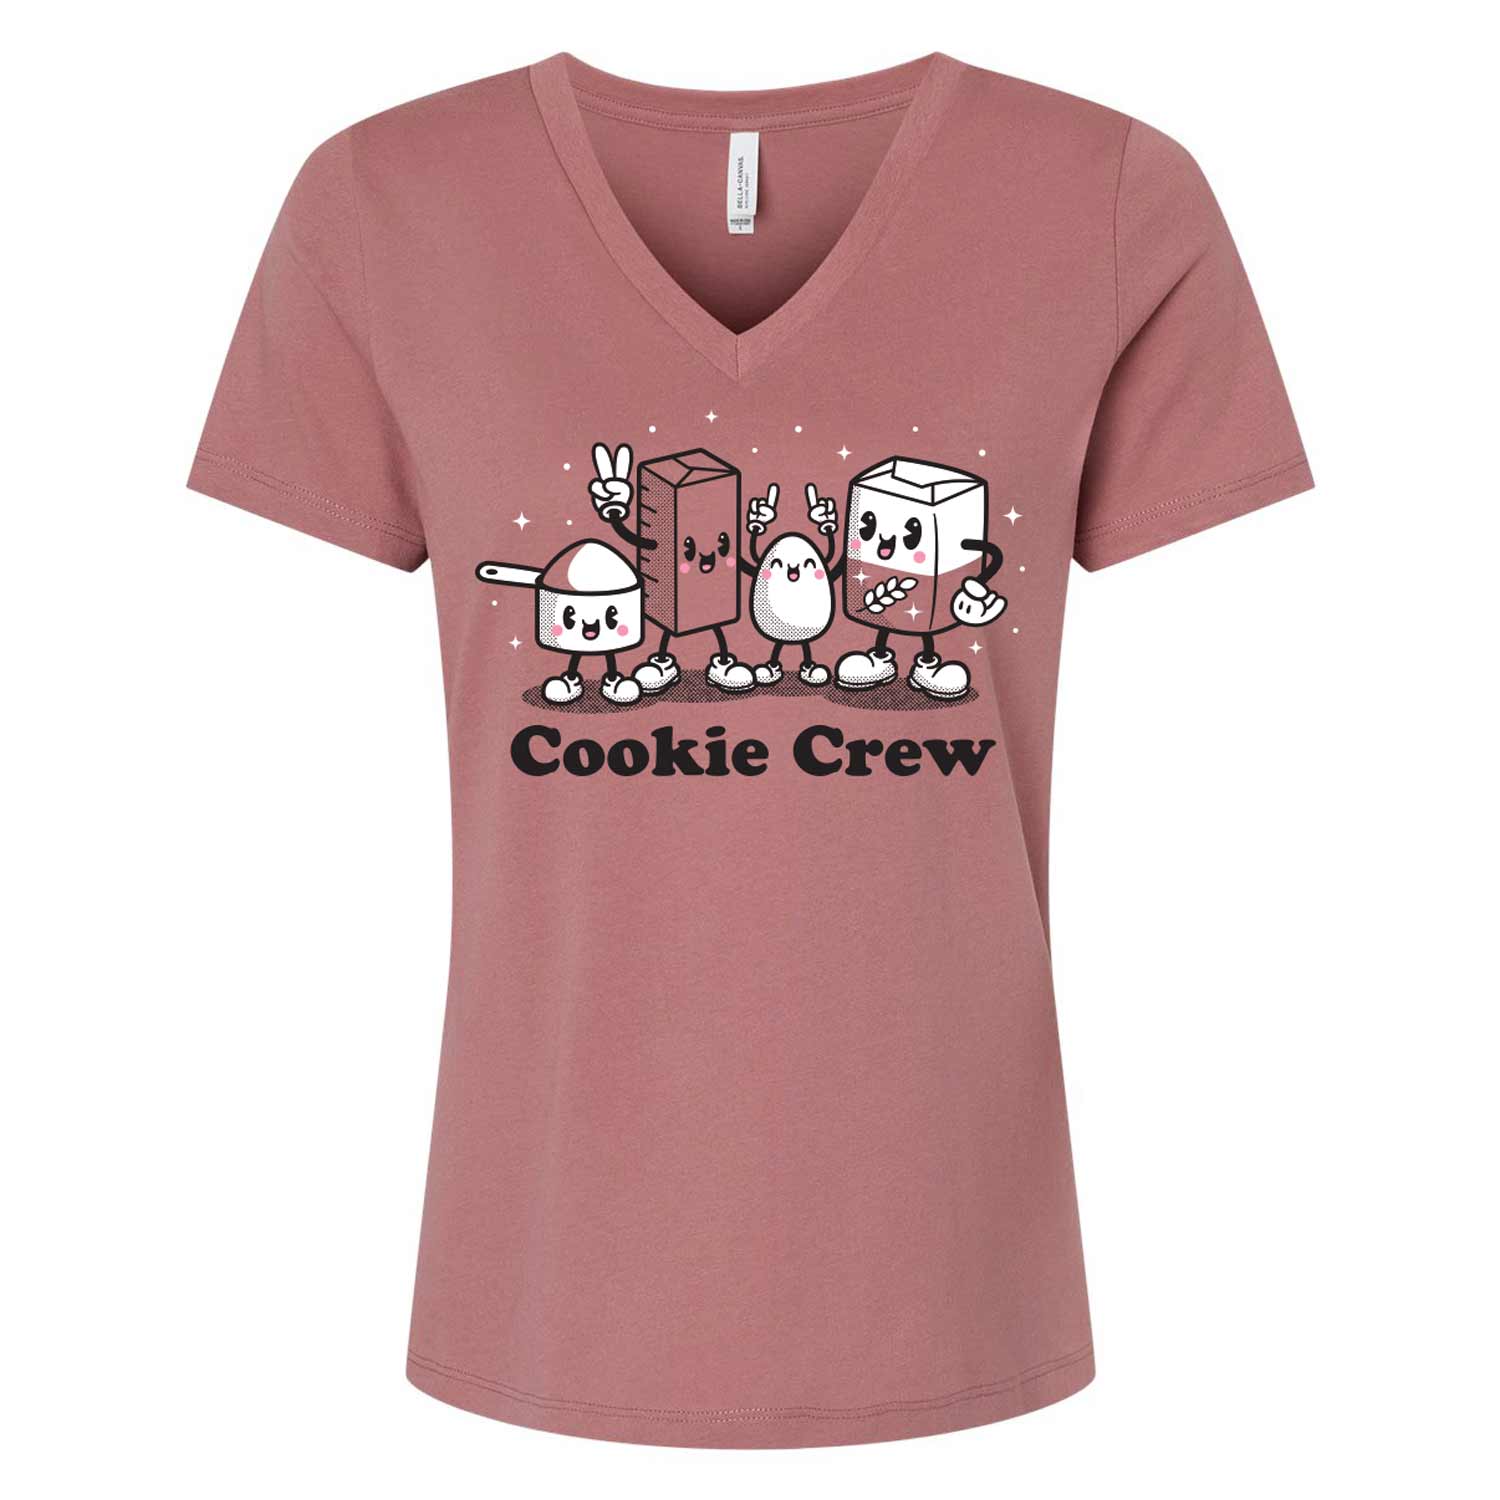 Cookie Crew V-Neck Shirt